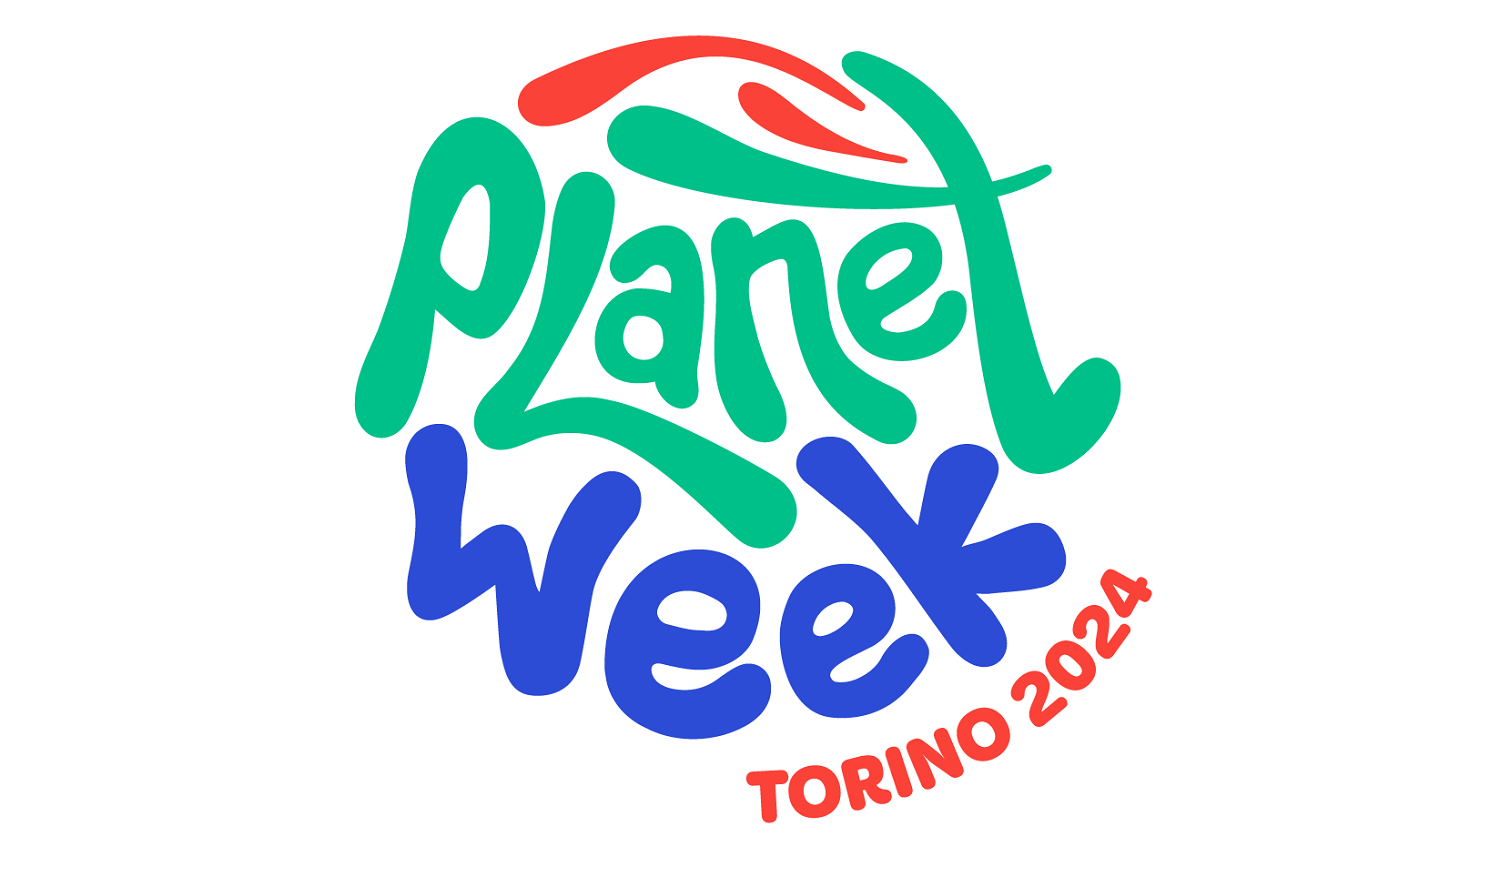 Planet Week